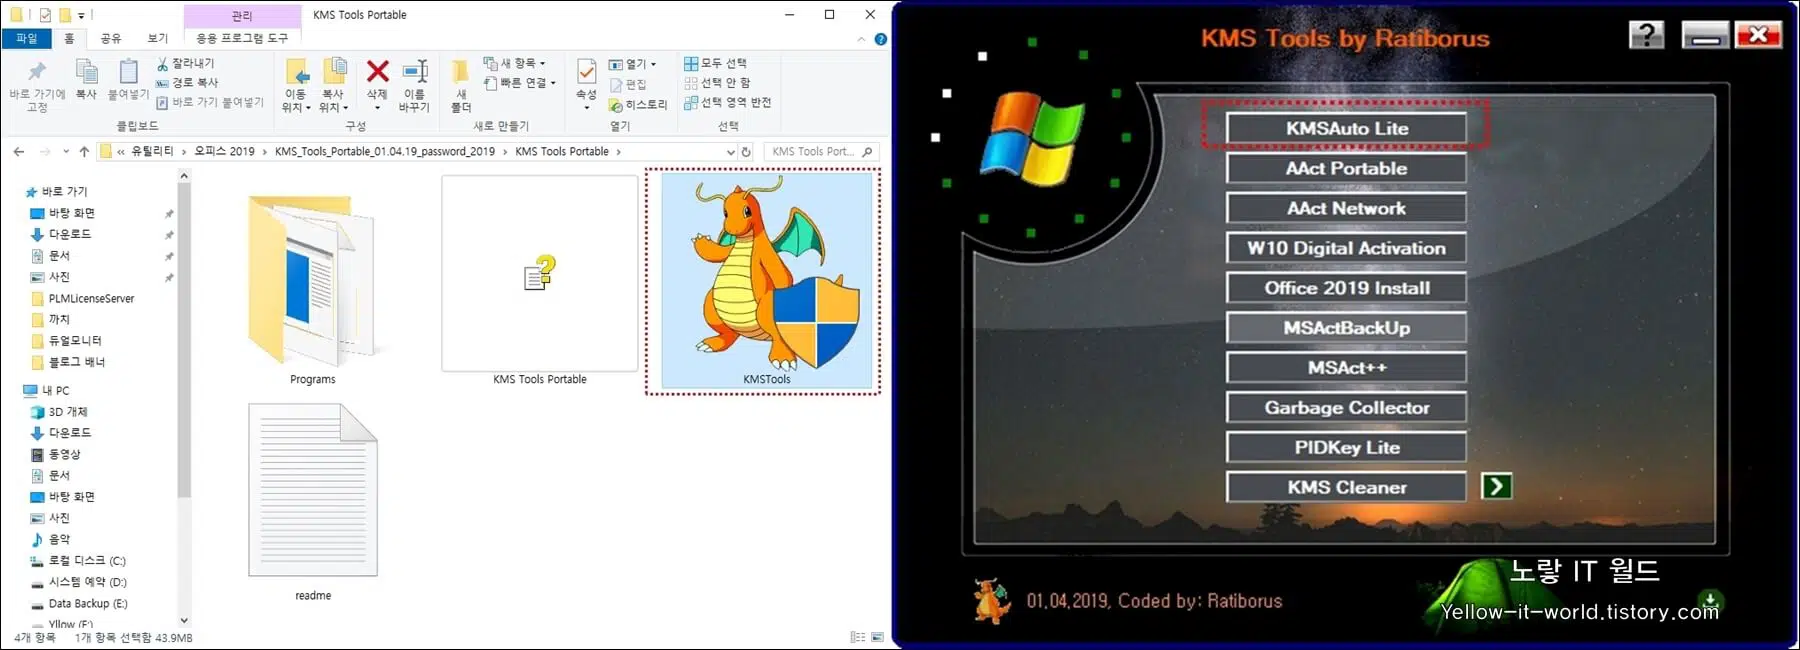 KMS Tools 2019 윈도우10 정품인증 KMSAtuo Lite